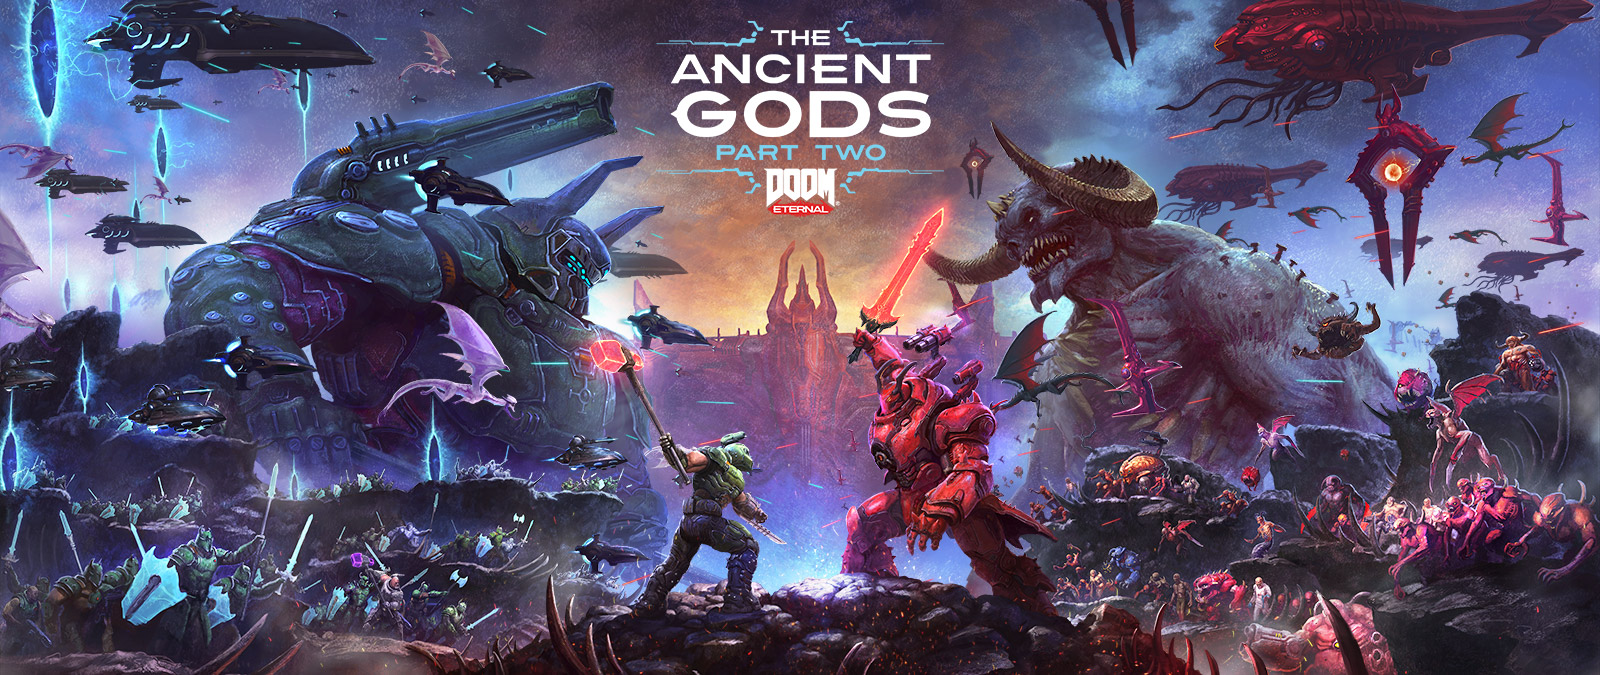 DOOM Eternal, The Ancient Gods Part Two, Uma batalha épica entre Slayers e Demons em uma paisagem rochosa do inferno. 